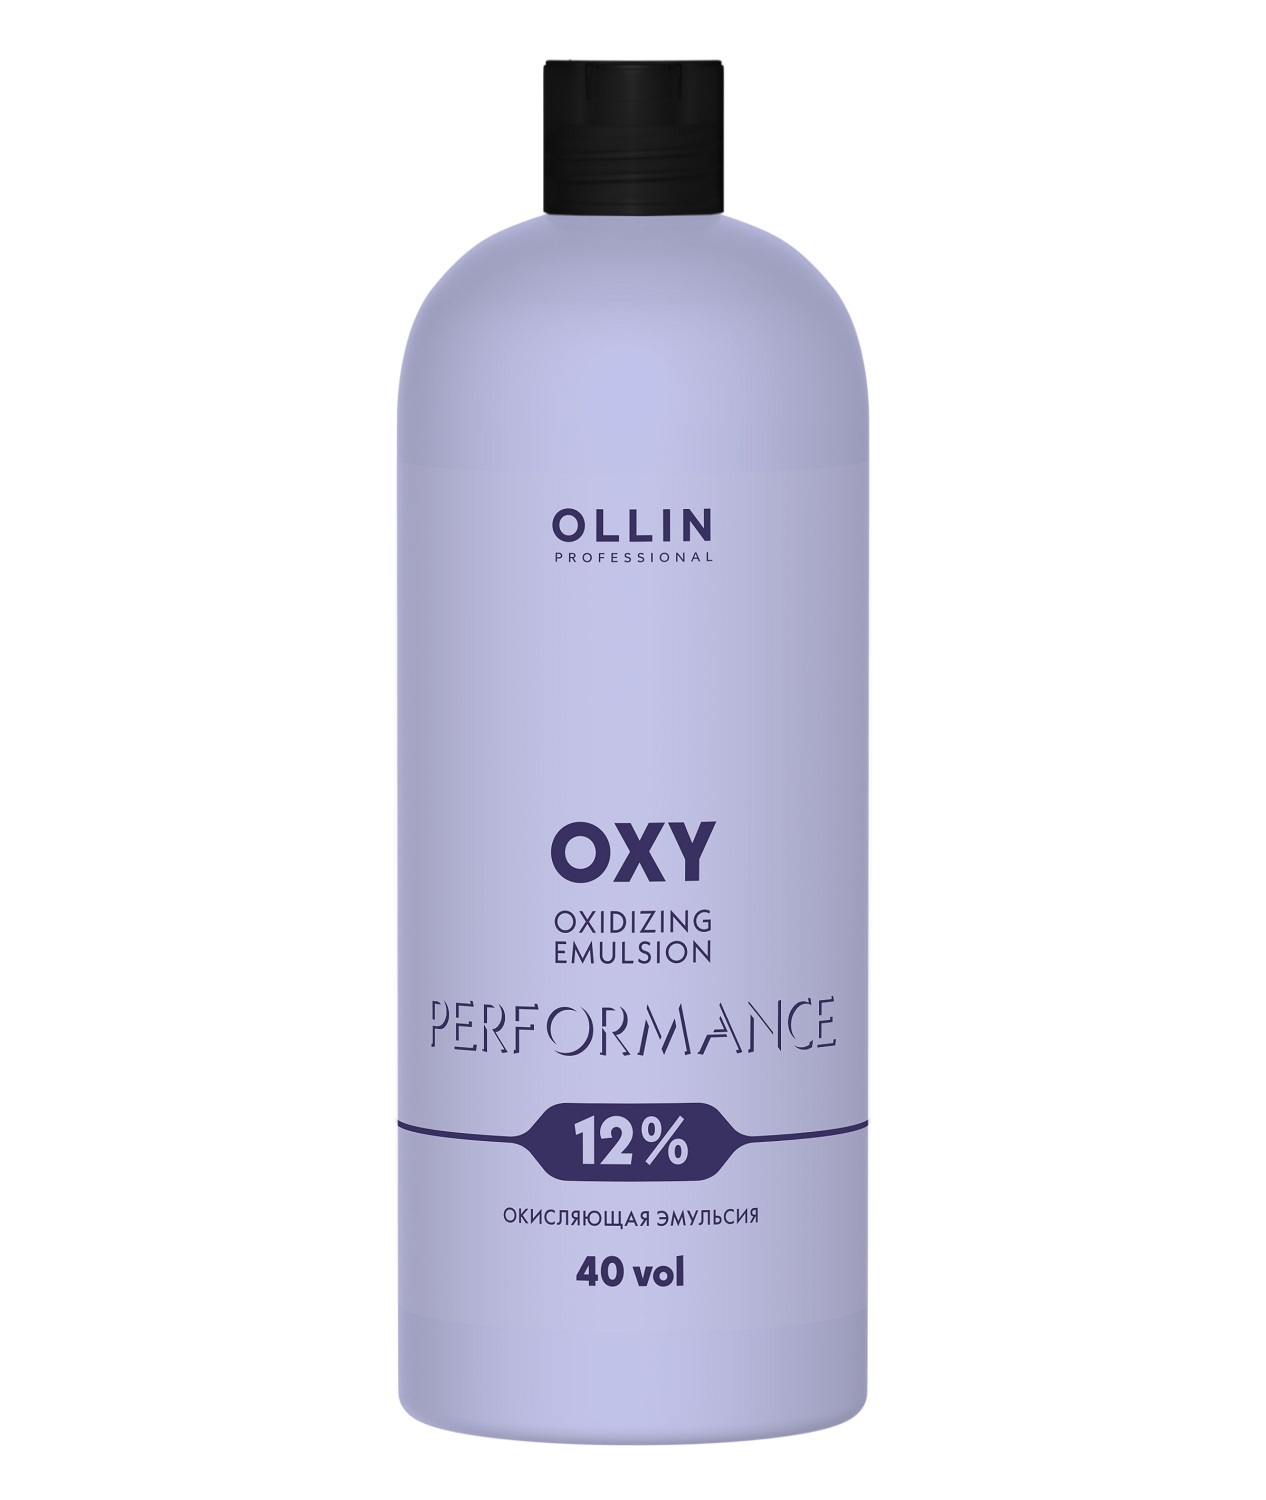 Ollin Professional Окисляющая эмульсия 12% 40 vol, 1000 мл (Ollin Professional, Performance) оксидант ollin professional performance oxy oxidizing emulsion 3% 10 vol 90 мл